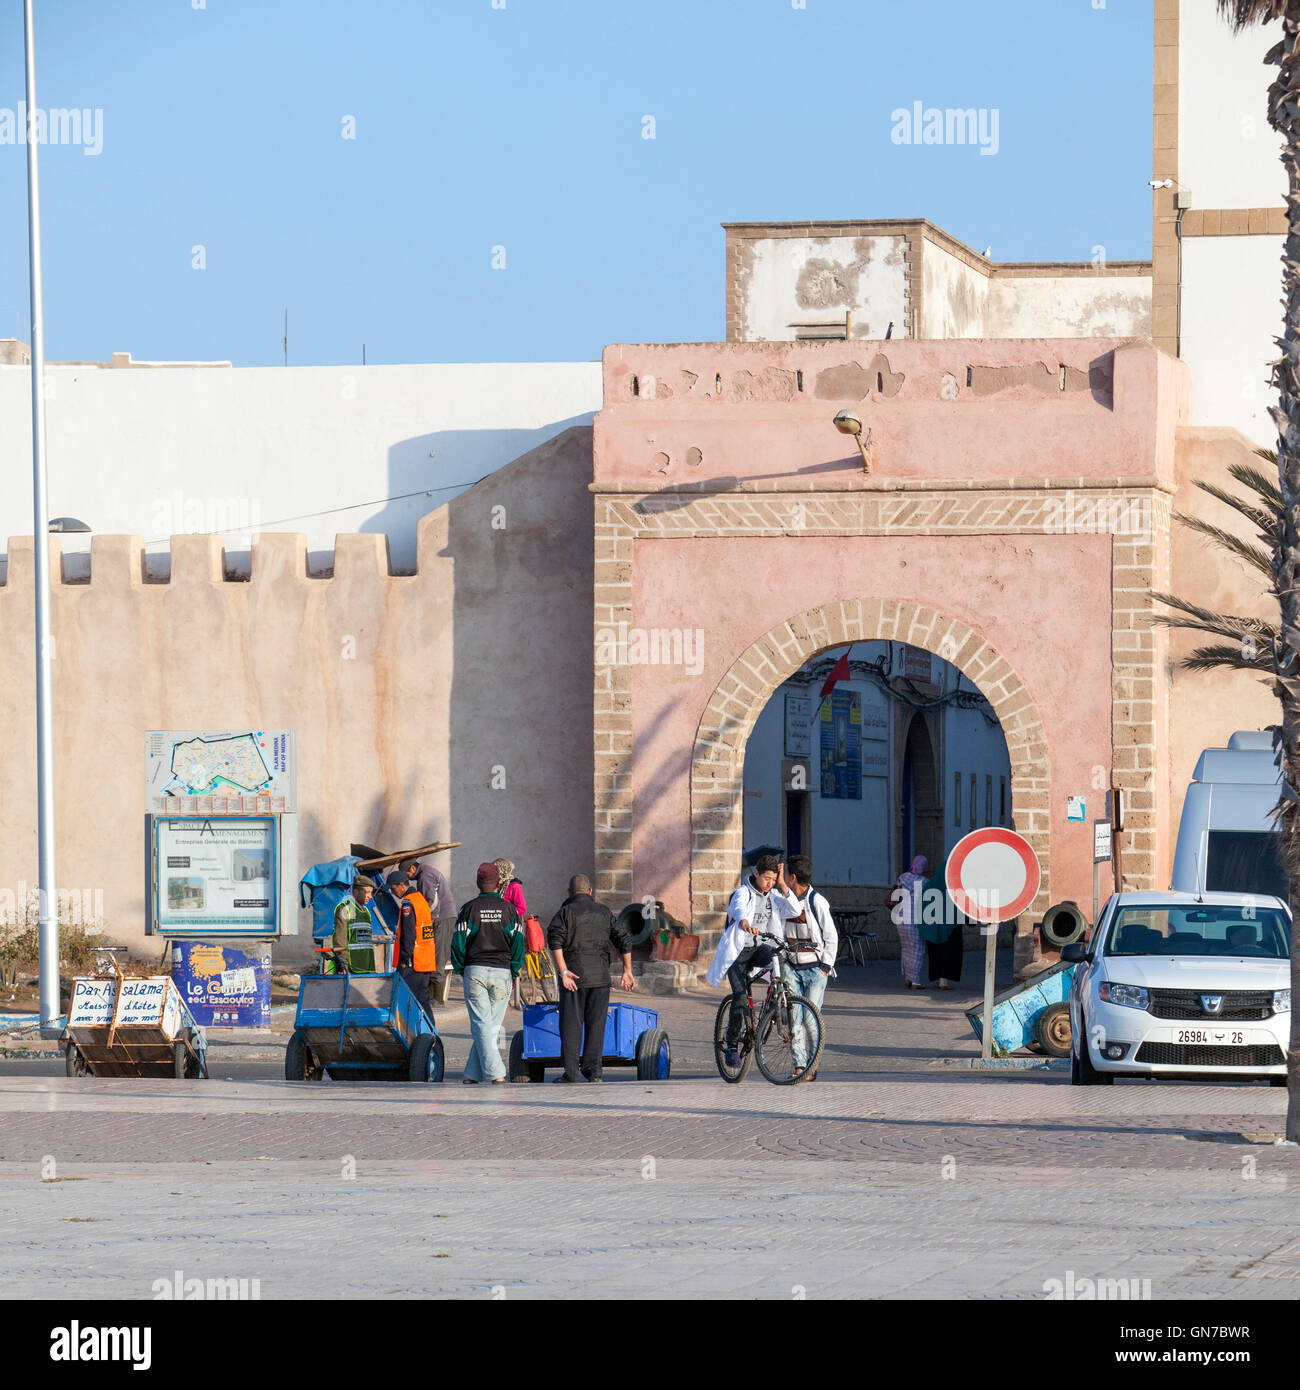 Essaouira, Maroc. Bab Marrakech. Porteurs avec leurs chariots à l'extérieur de la porte d'attente pour les clients. Banque D'Images